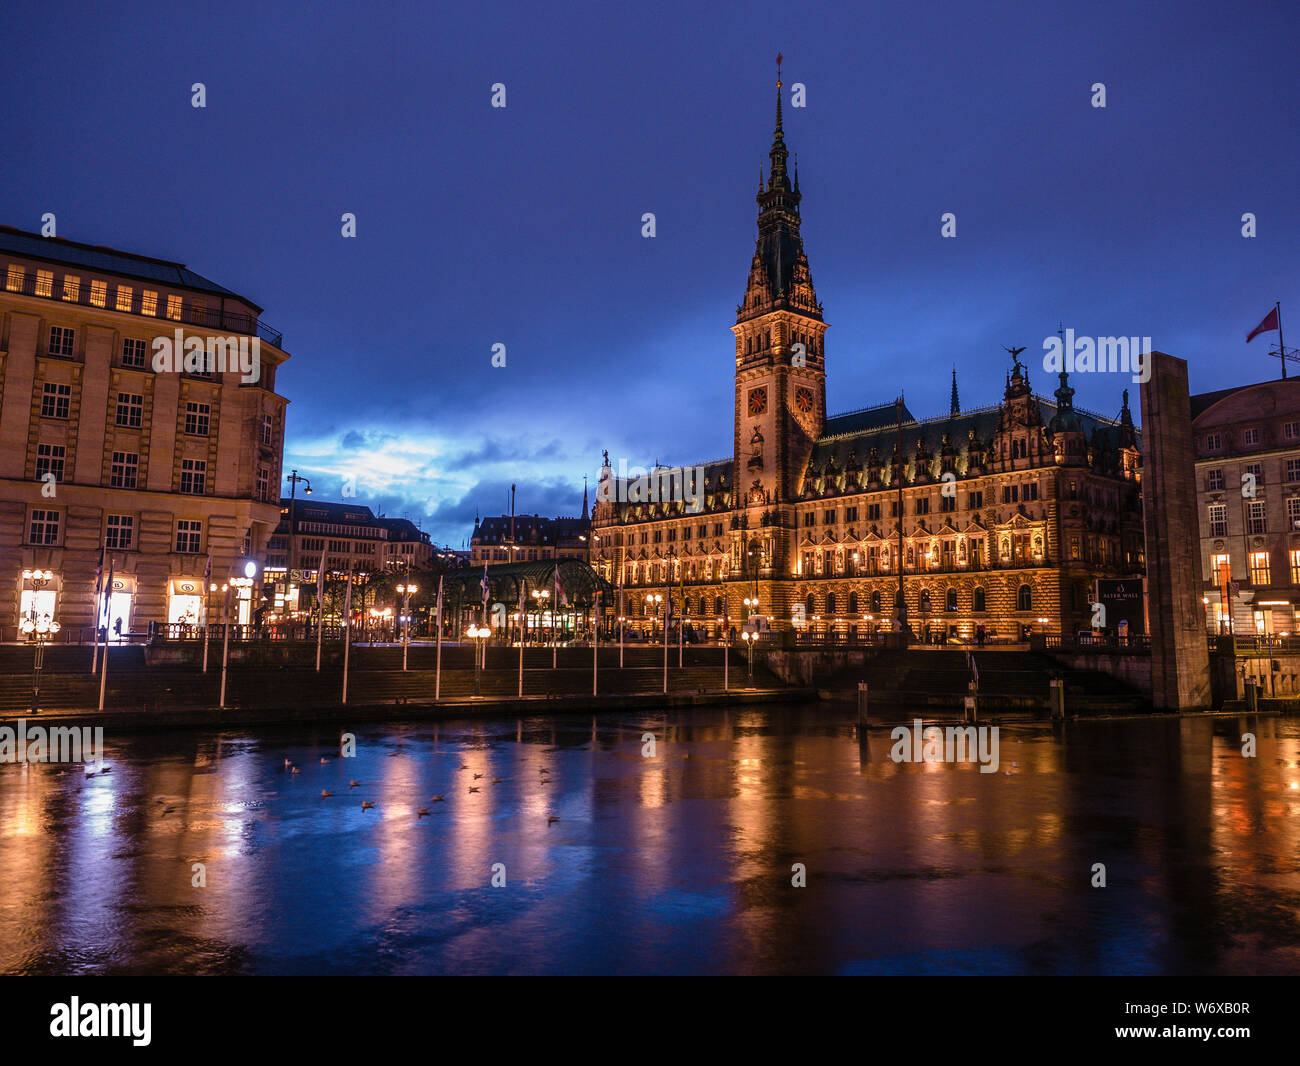 Photo de l'hôtel de ville de Hambourg par nuit Banque D'Images